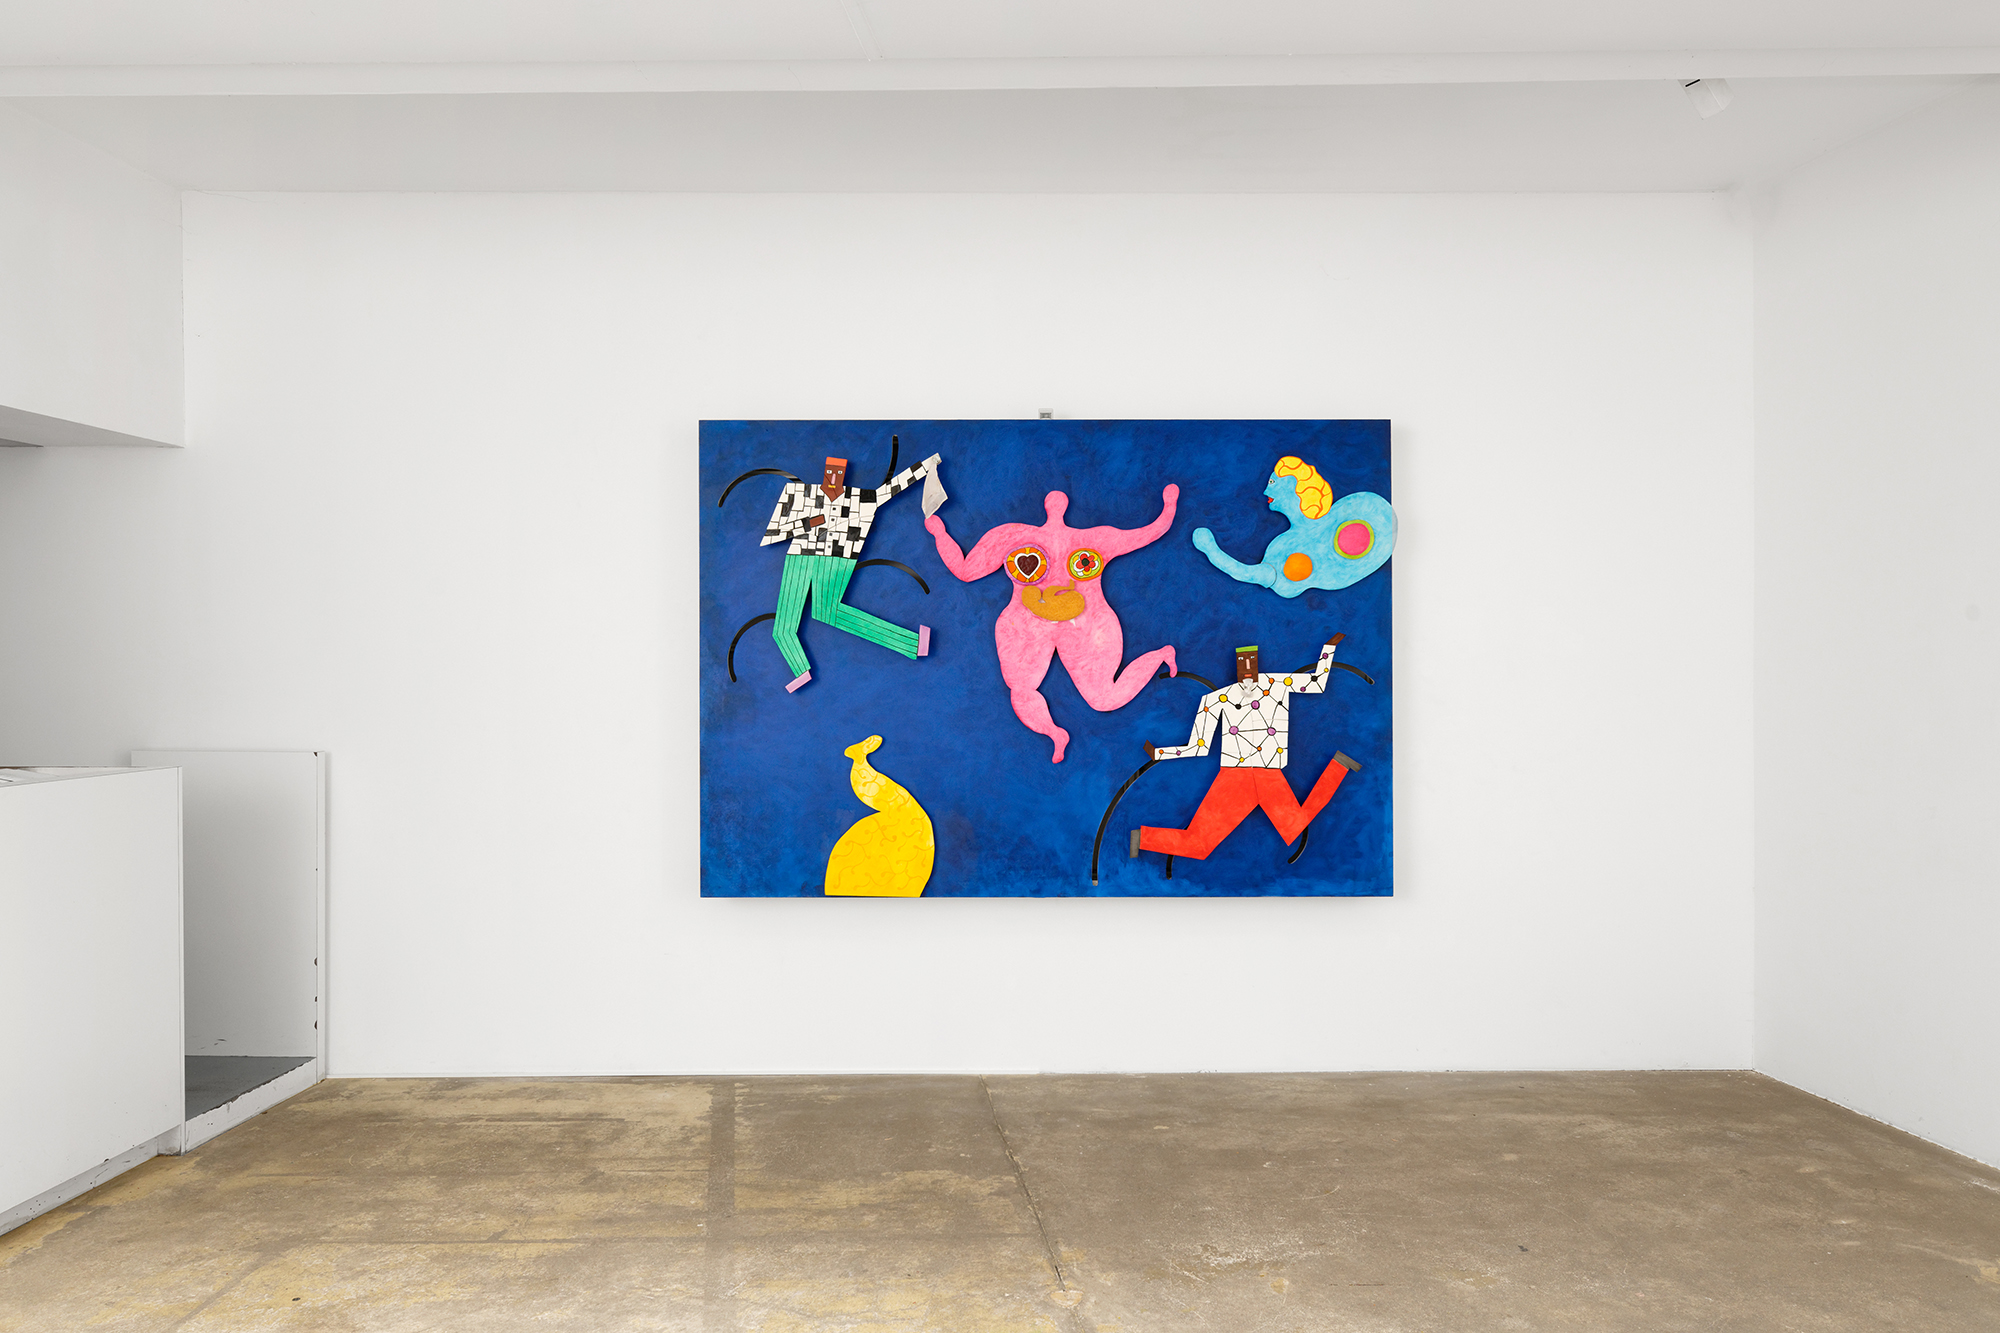 Installation image for Niki de Saint Phalle: Tableaux éclatés, at Galerie Georges-Philippe & Nathalie Vallois